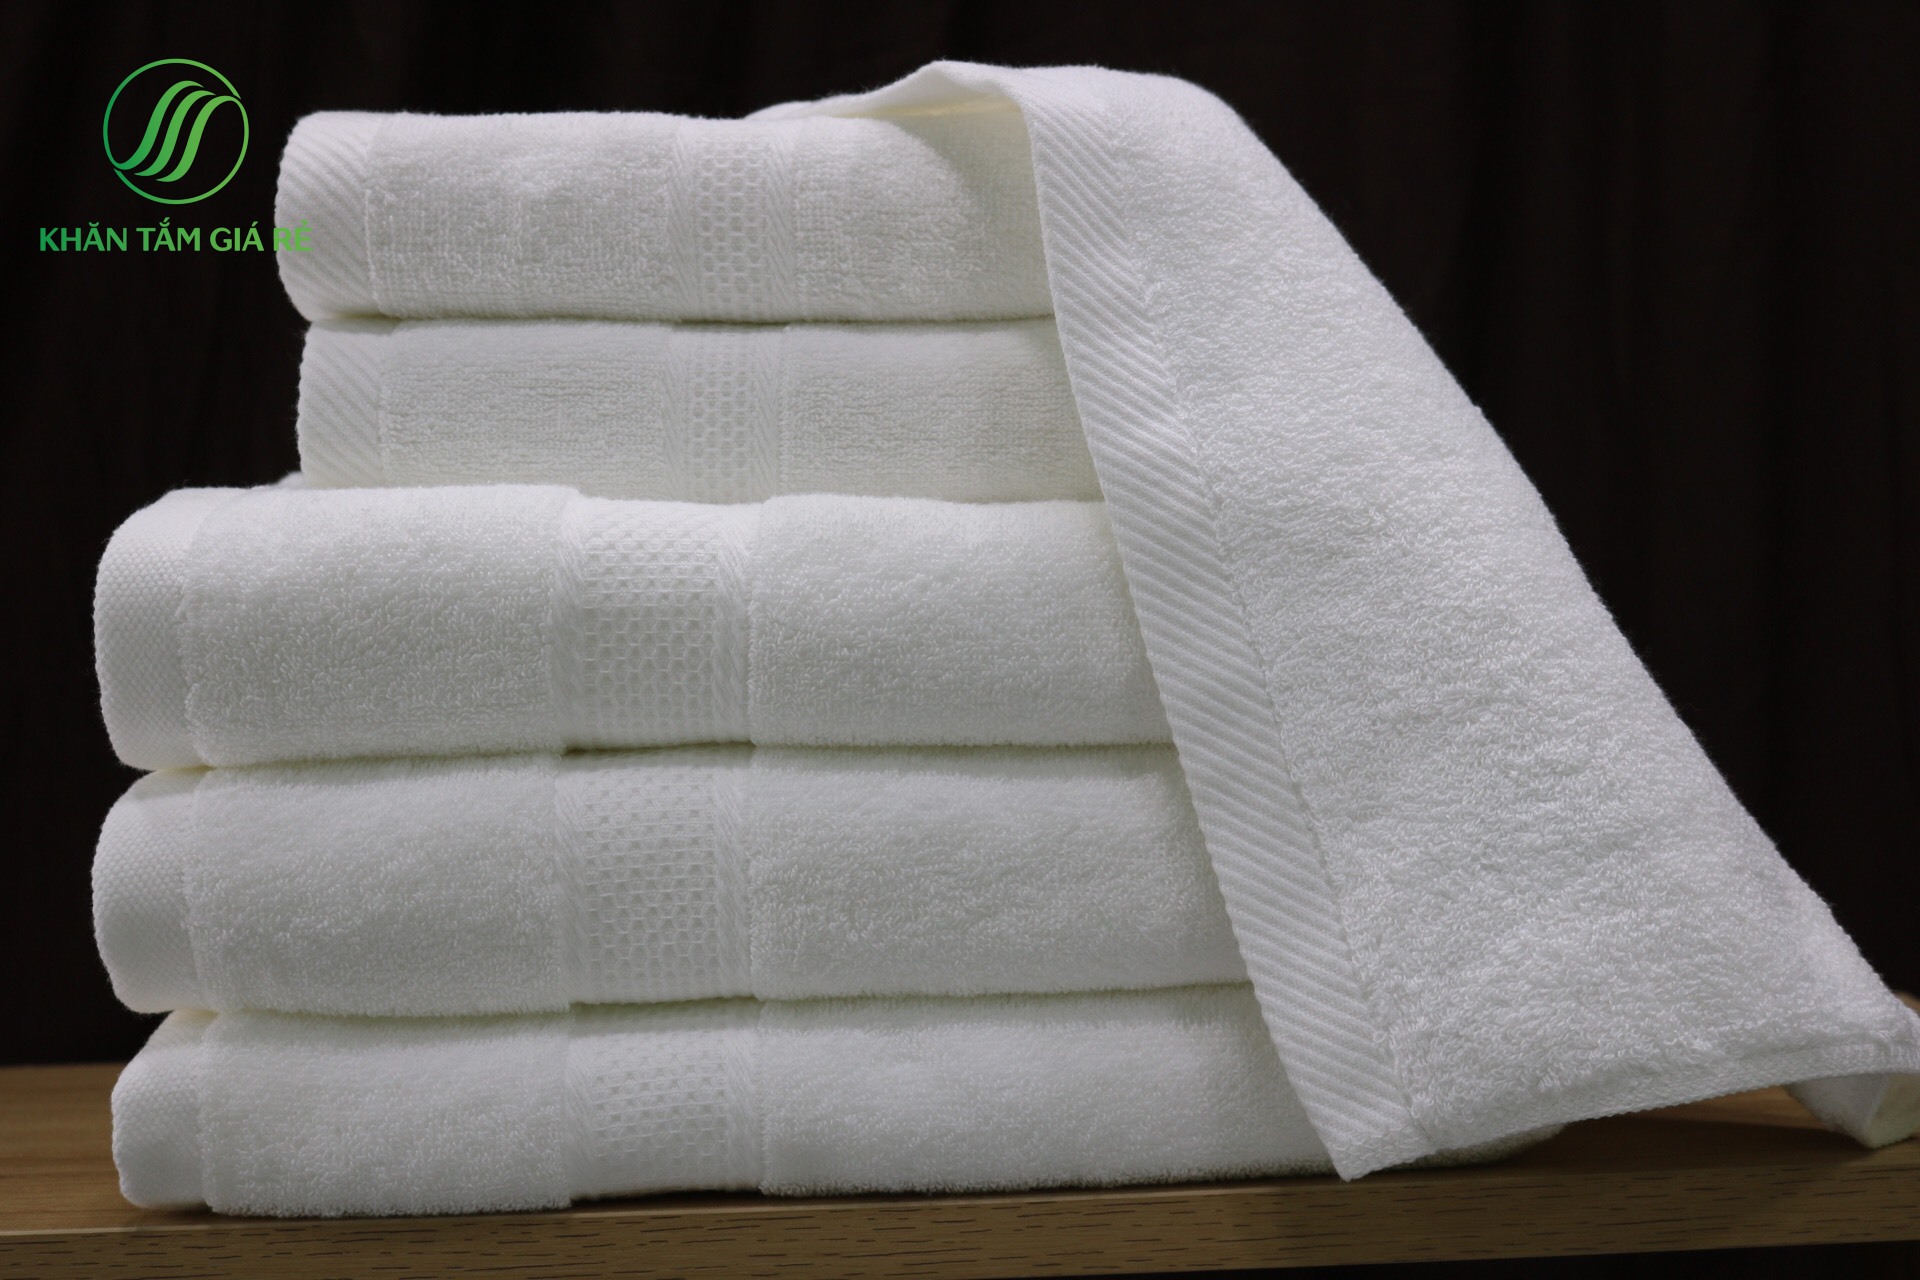 Dòng khăn tắm giá rẻ TPHCM của chúng tôi được nhiều đơn vị chọn lựa và đánh giá cao vì mẫu mã đẹp, nhiều kích thước 